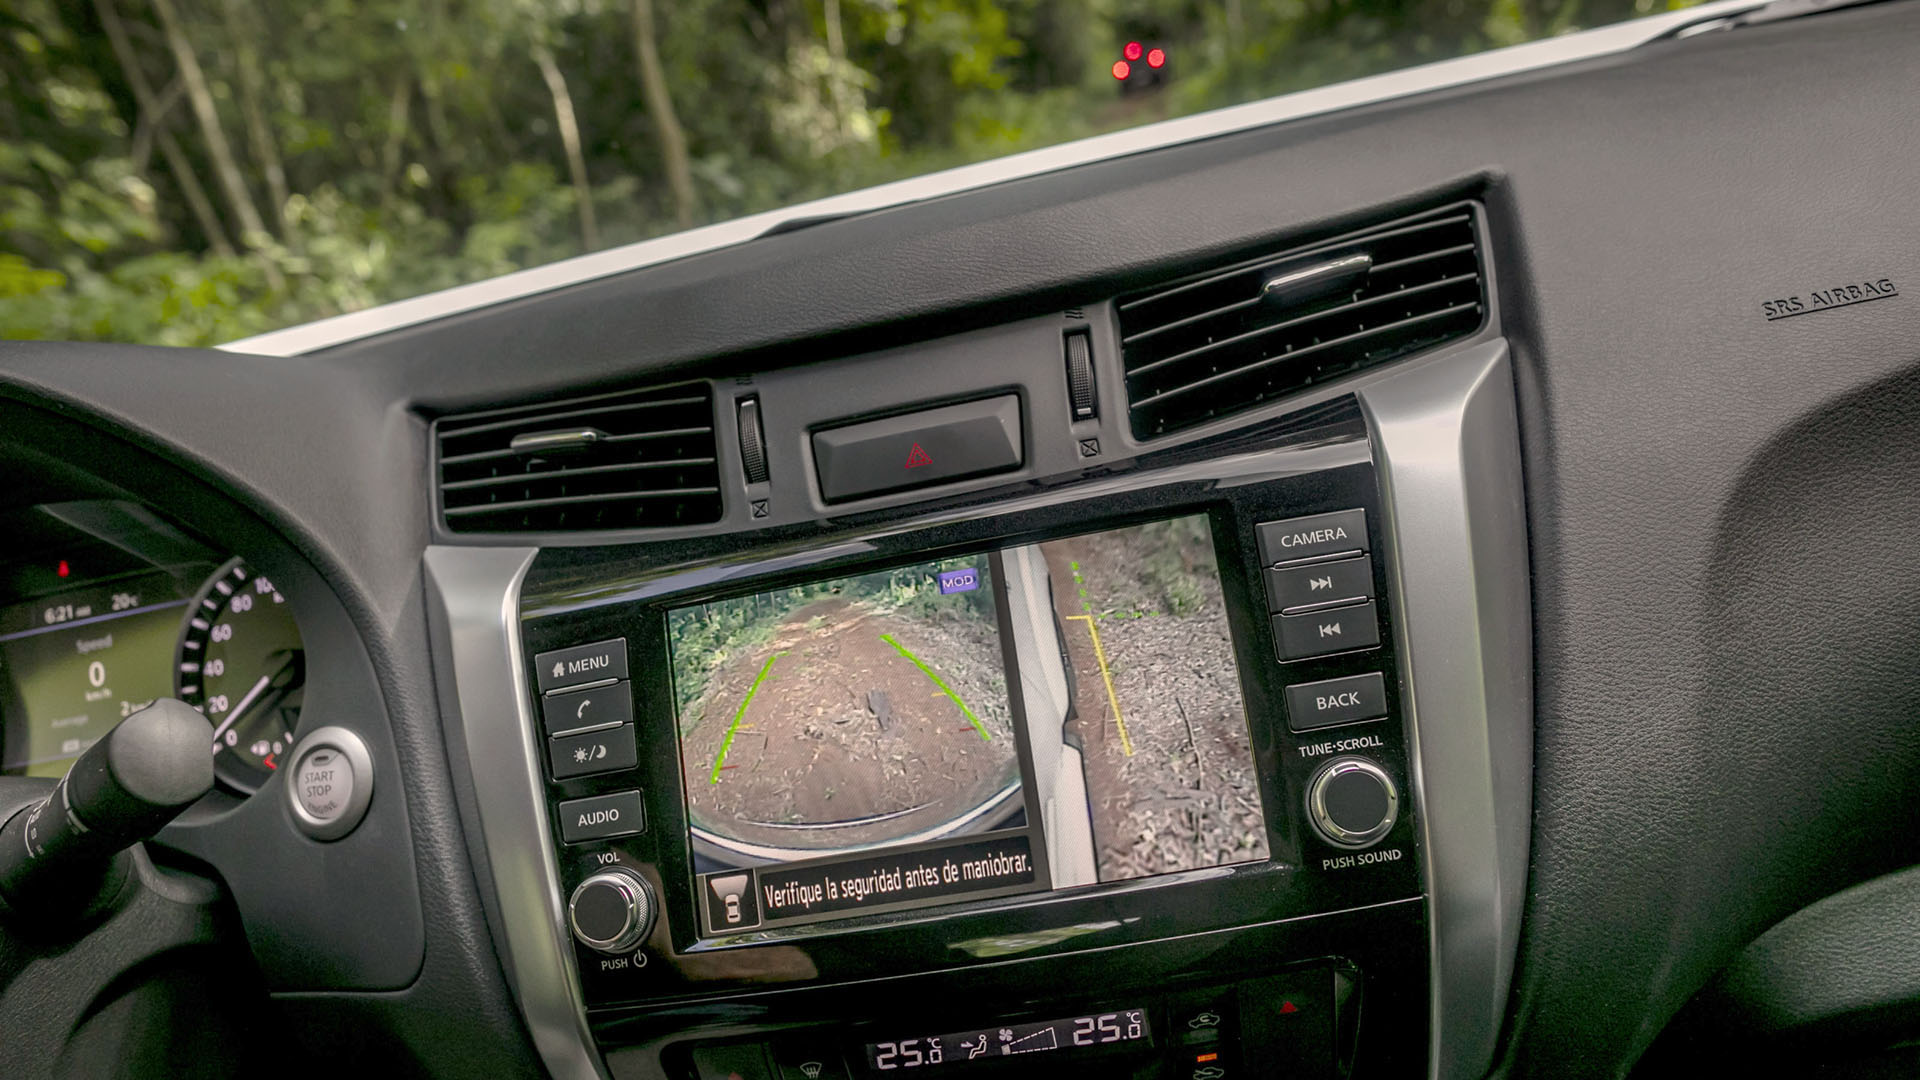 Nissan Safety Shield inkluderer alle ADAS assistanseverktøy, 360-graders overvåkingssenter med kameraer som dekker kjøretøyets miljø